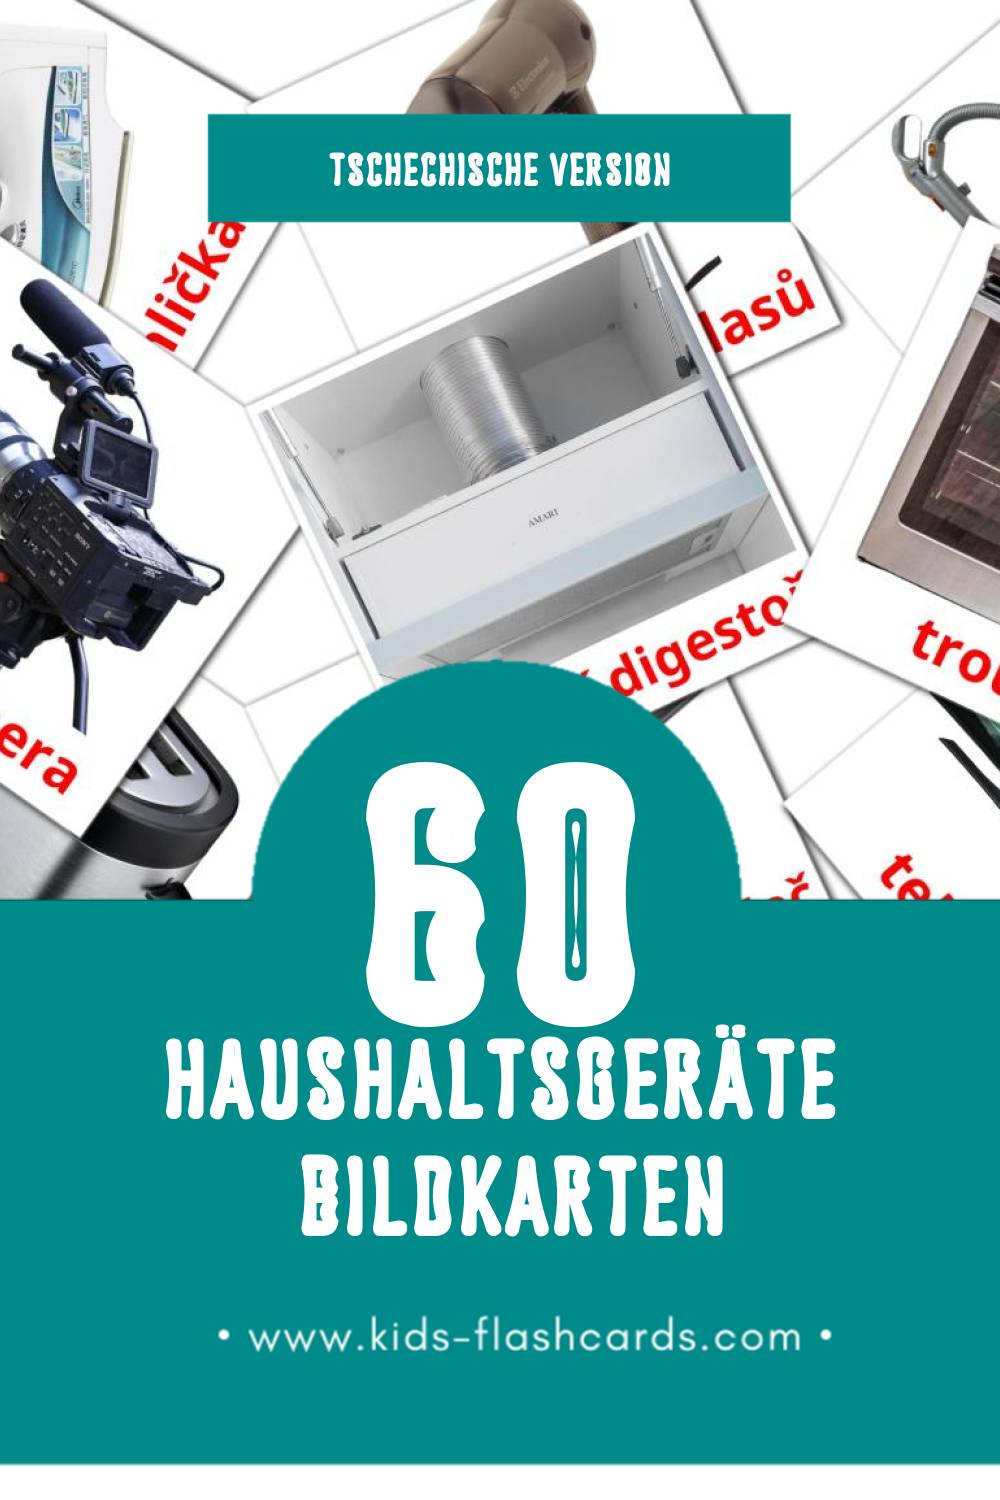 Visual Domácí spotřebiče Flashcards für Kleinkinder (60 Karten in Tschechisch)